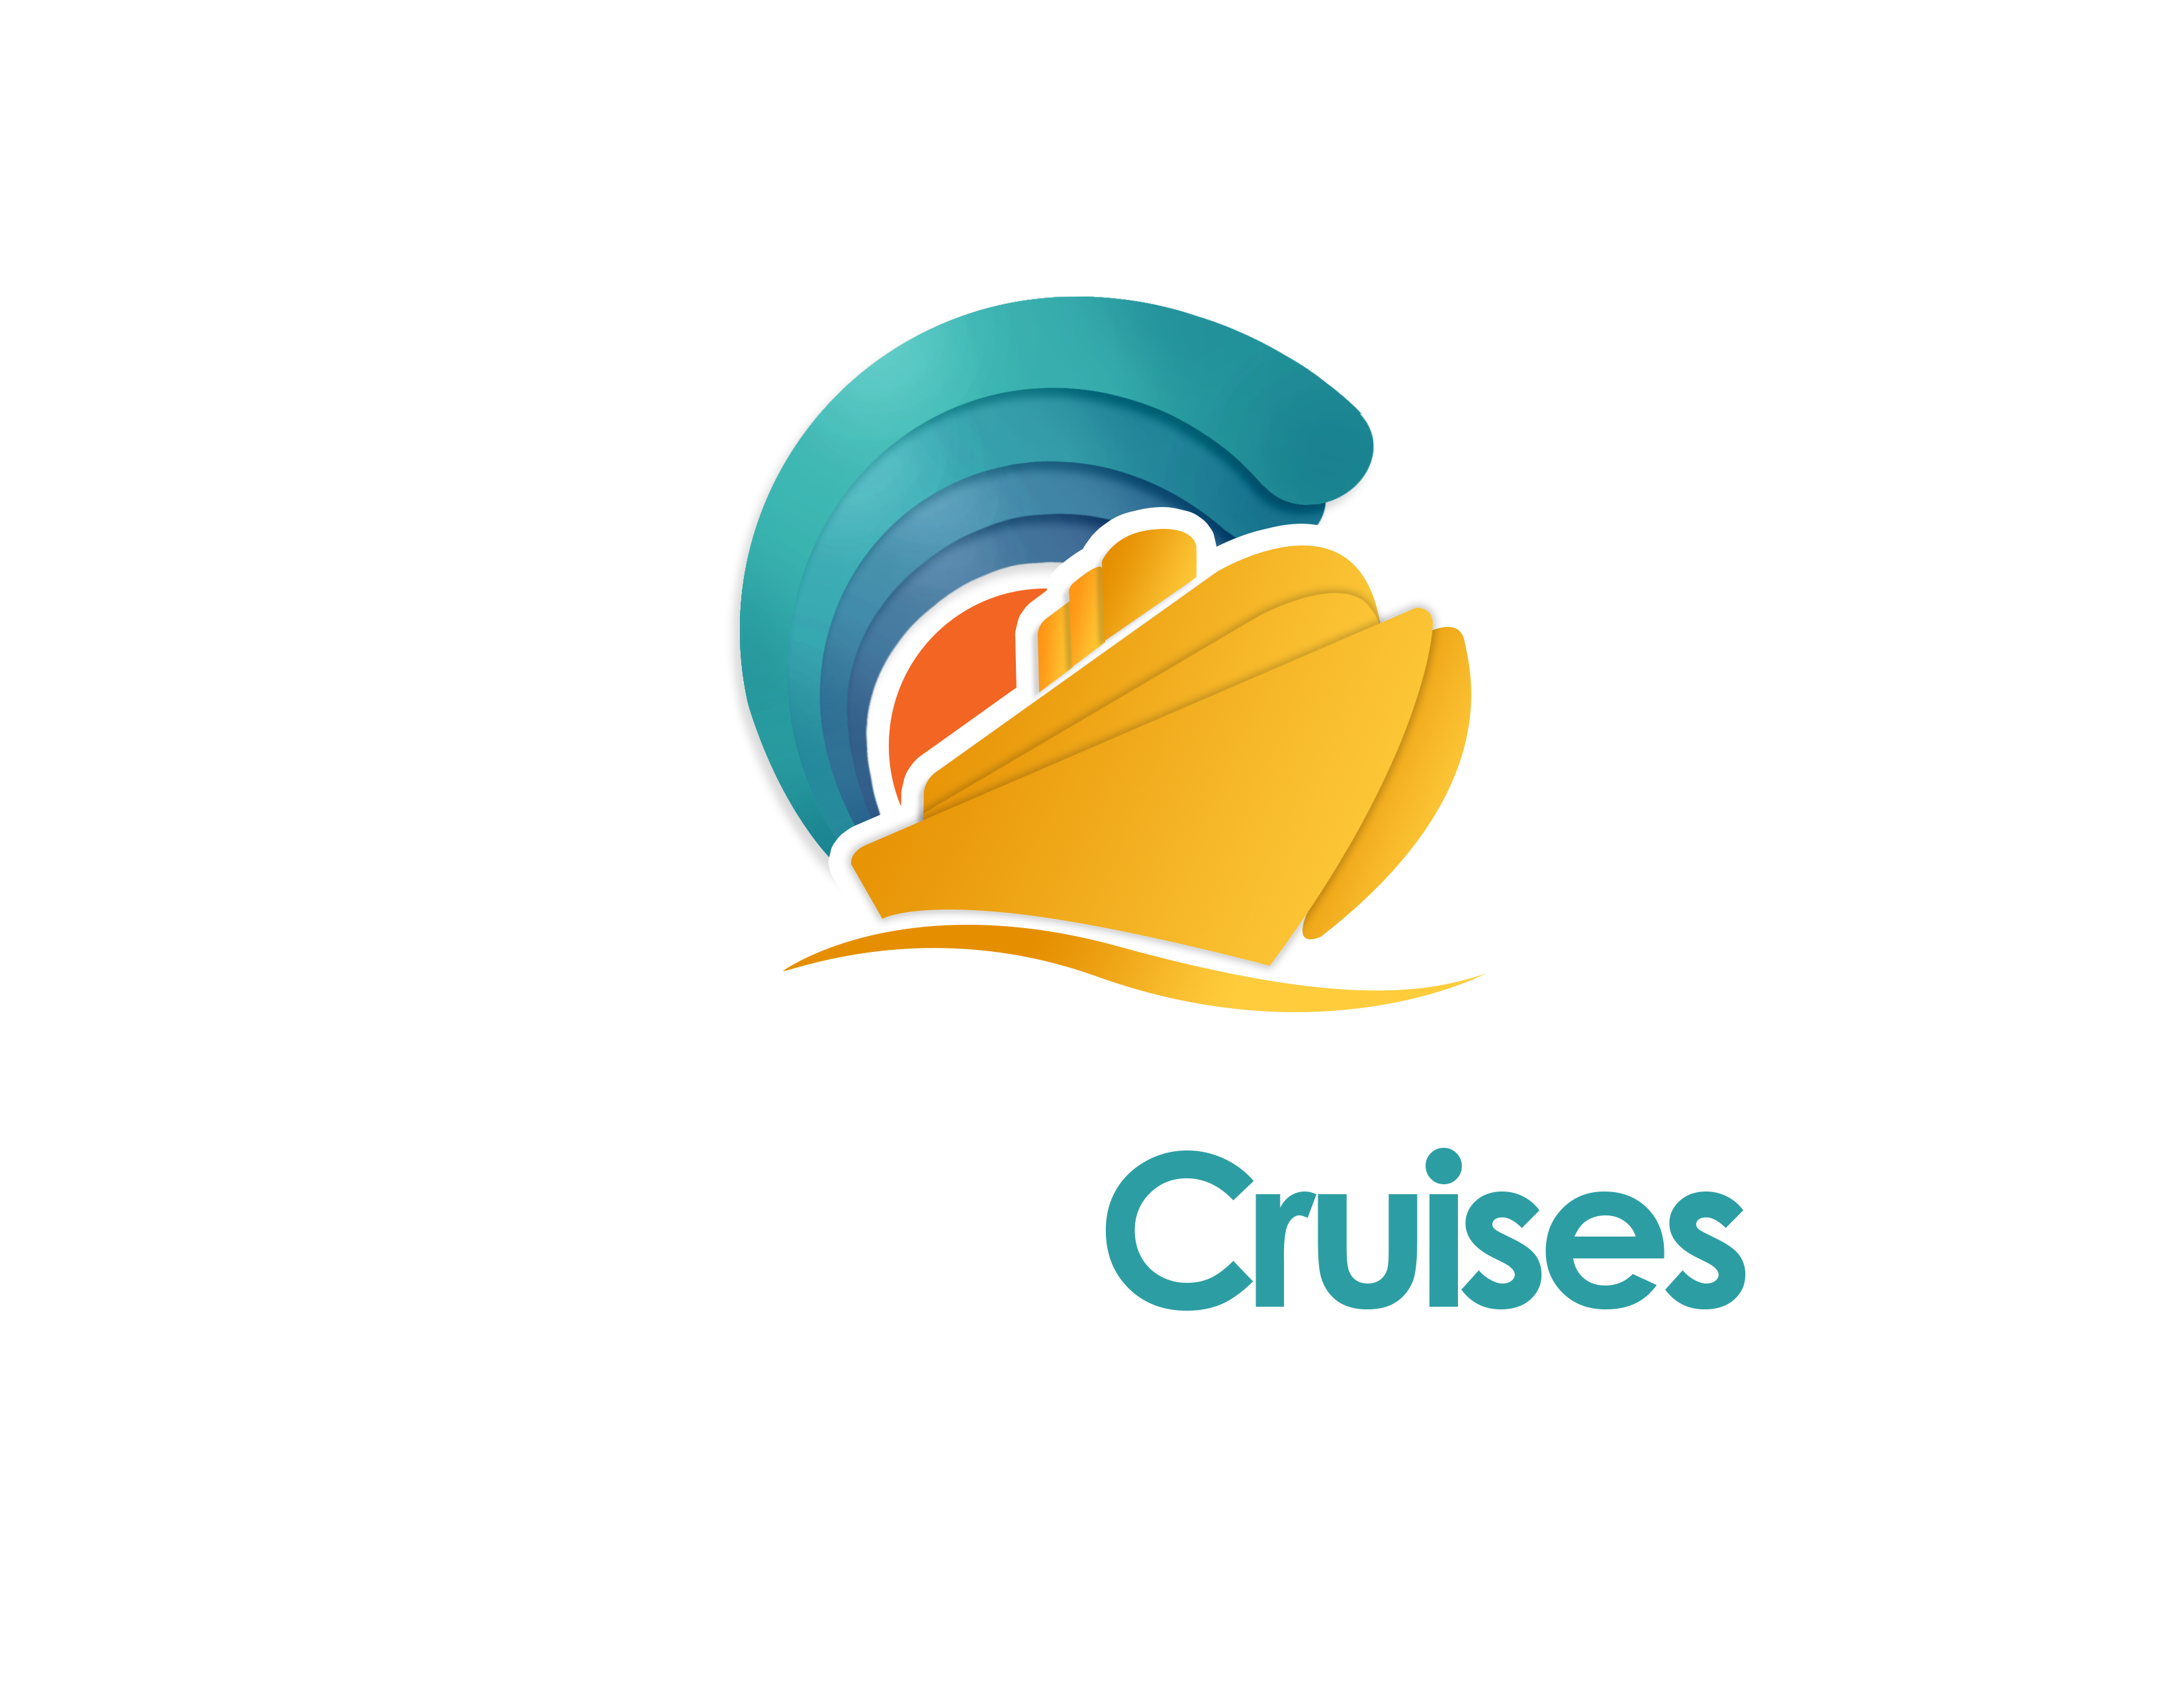 Global Cruises